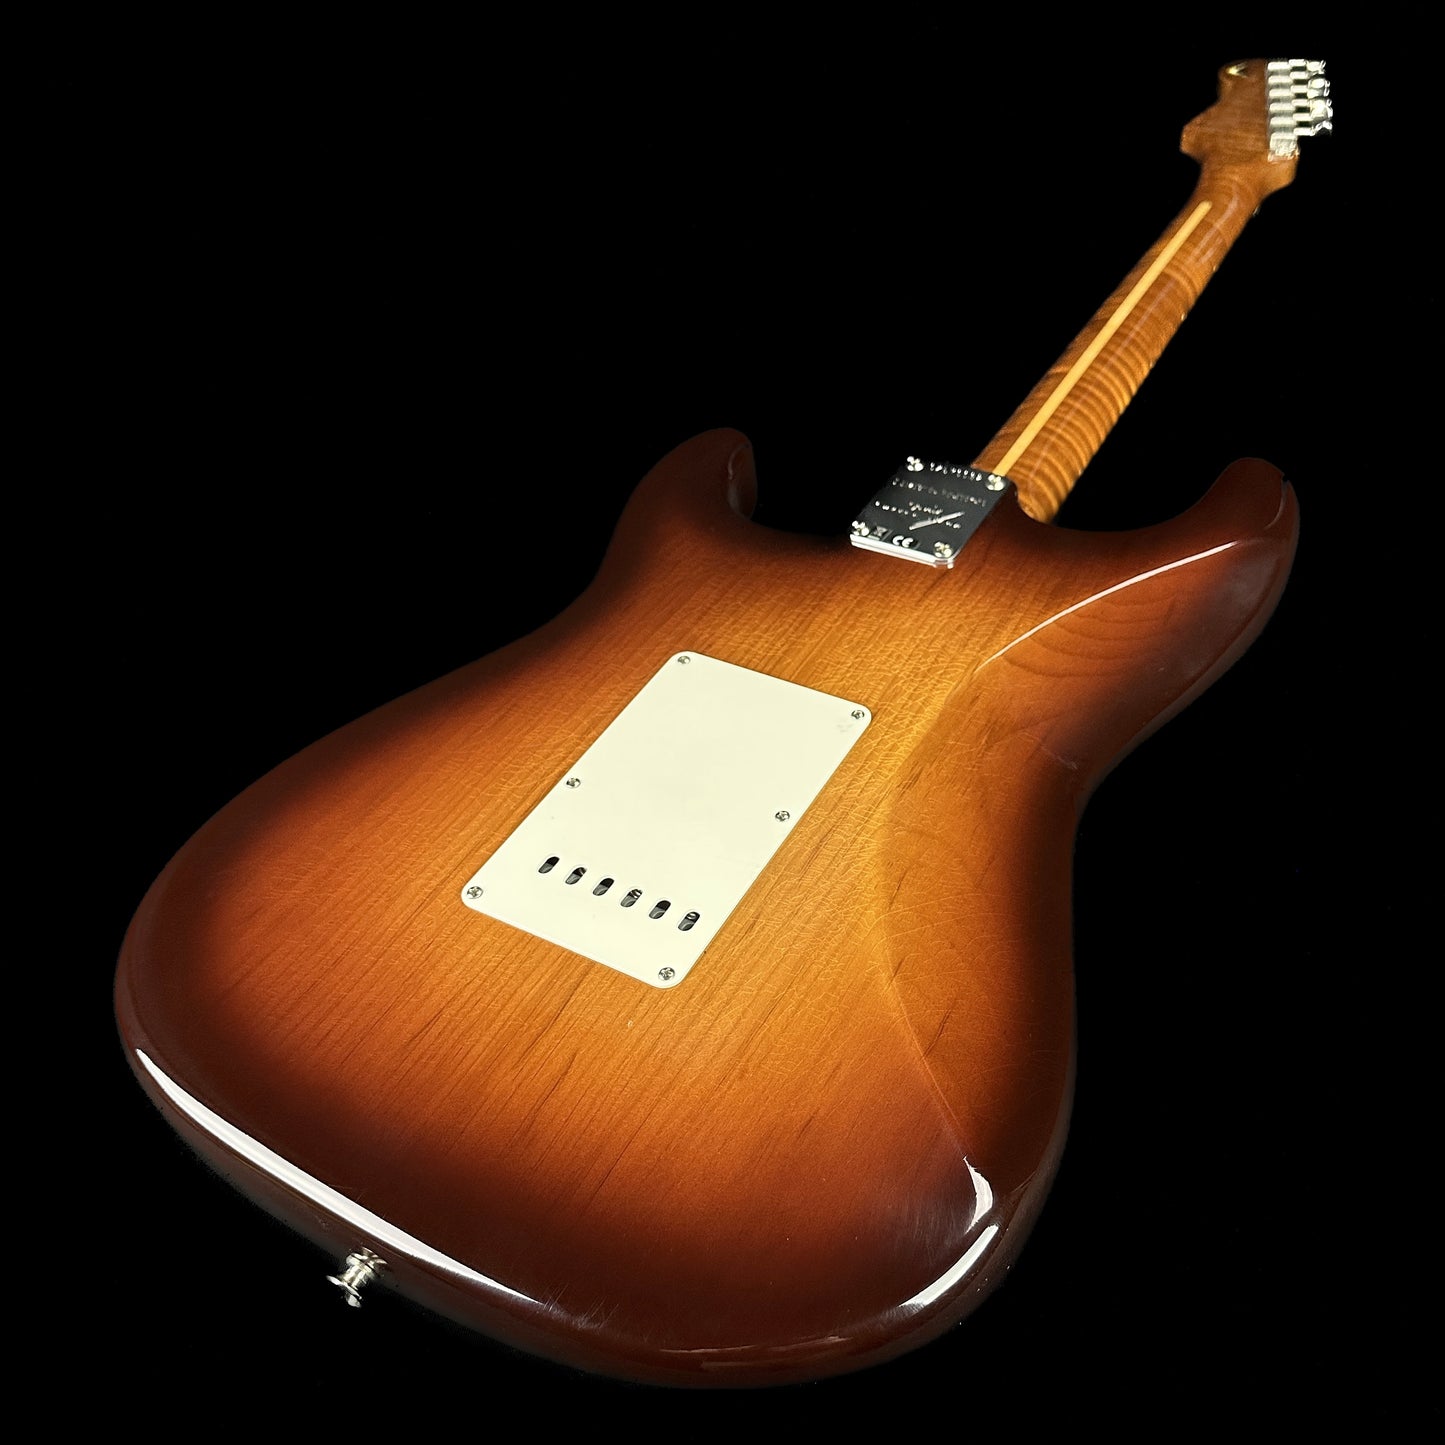 Back angle of Fender Custom Shop Limited Edition Roasted Pine Chocolate 2 Tone Sunburst.